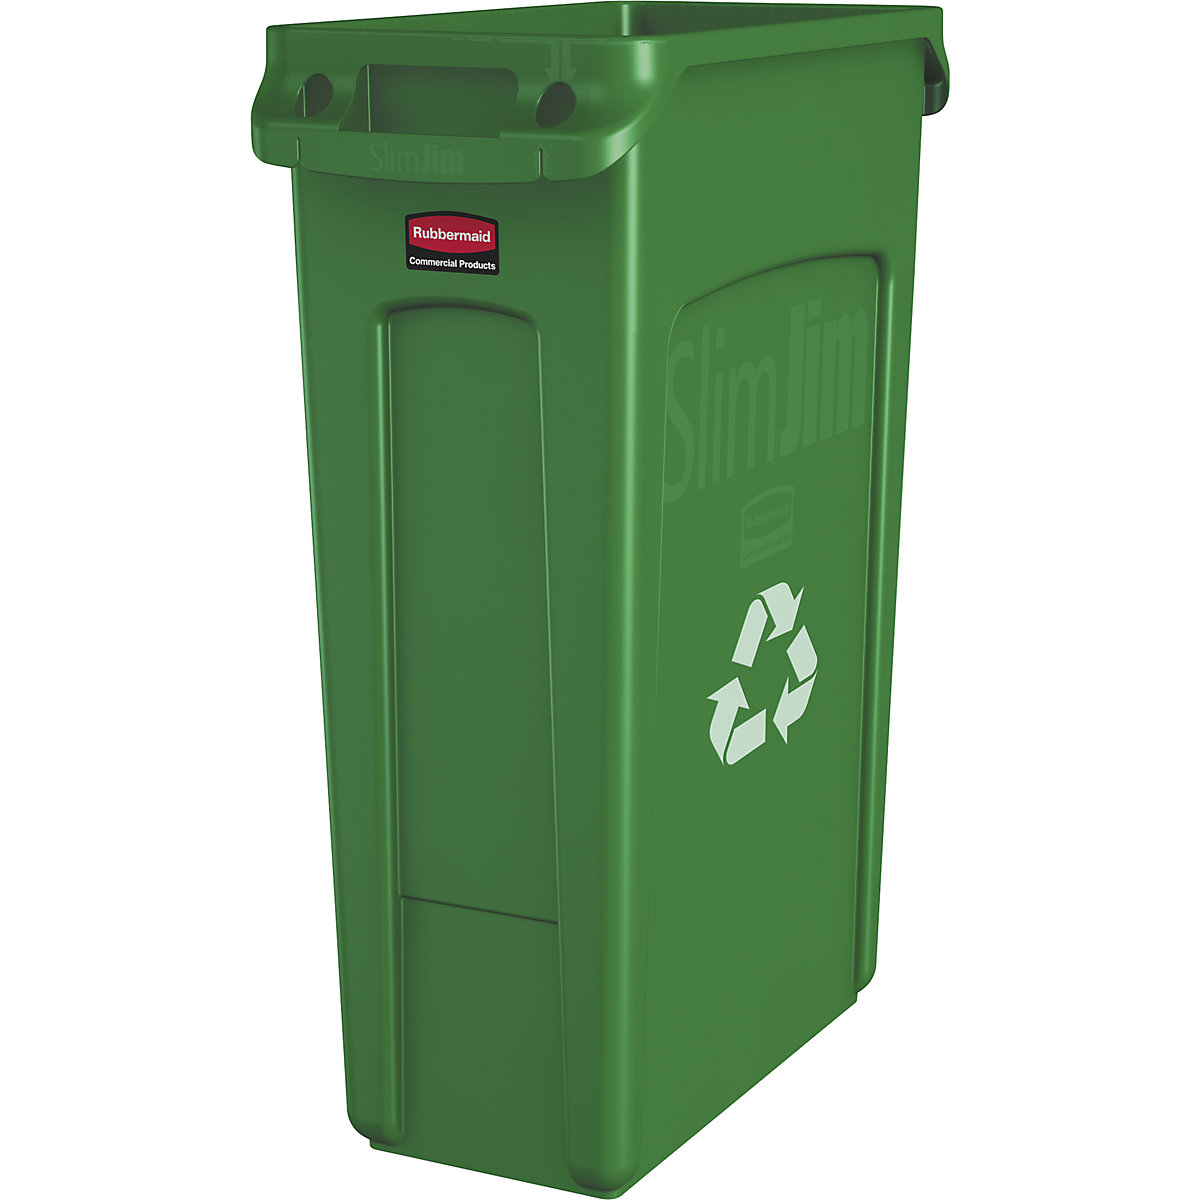 Coletor de materiais recicláveis/balde do lixo SLIM JIM® – Rubbermaid, volume 87 l, com canais de ventilação, verde com símbolo de reciclagem-11